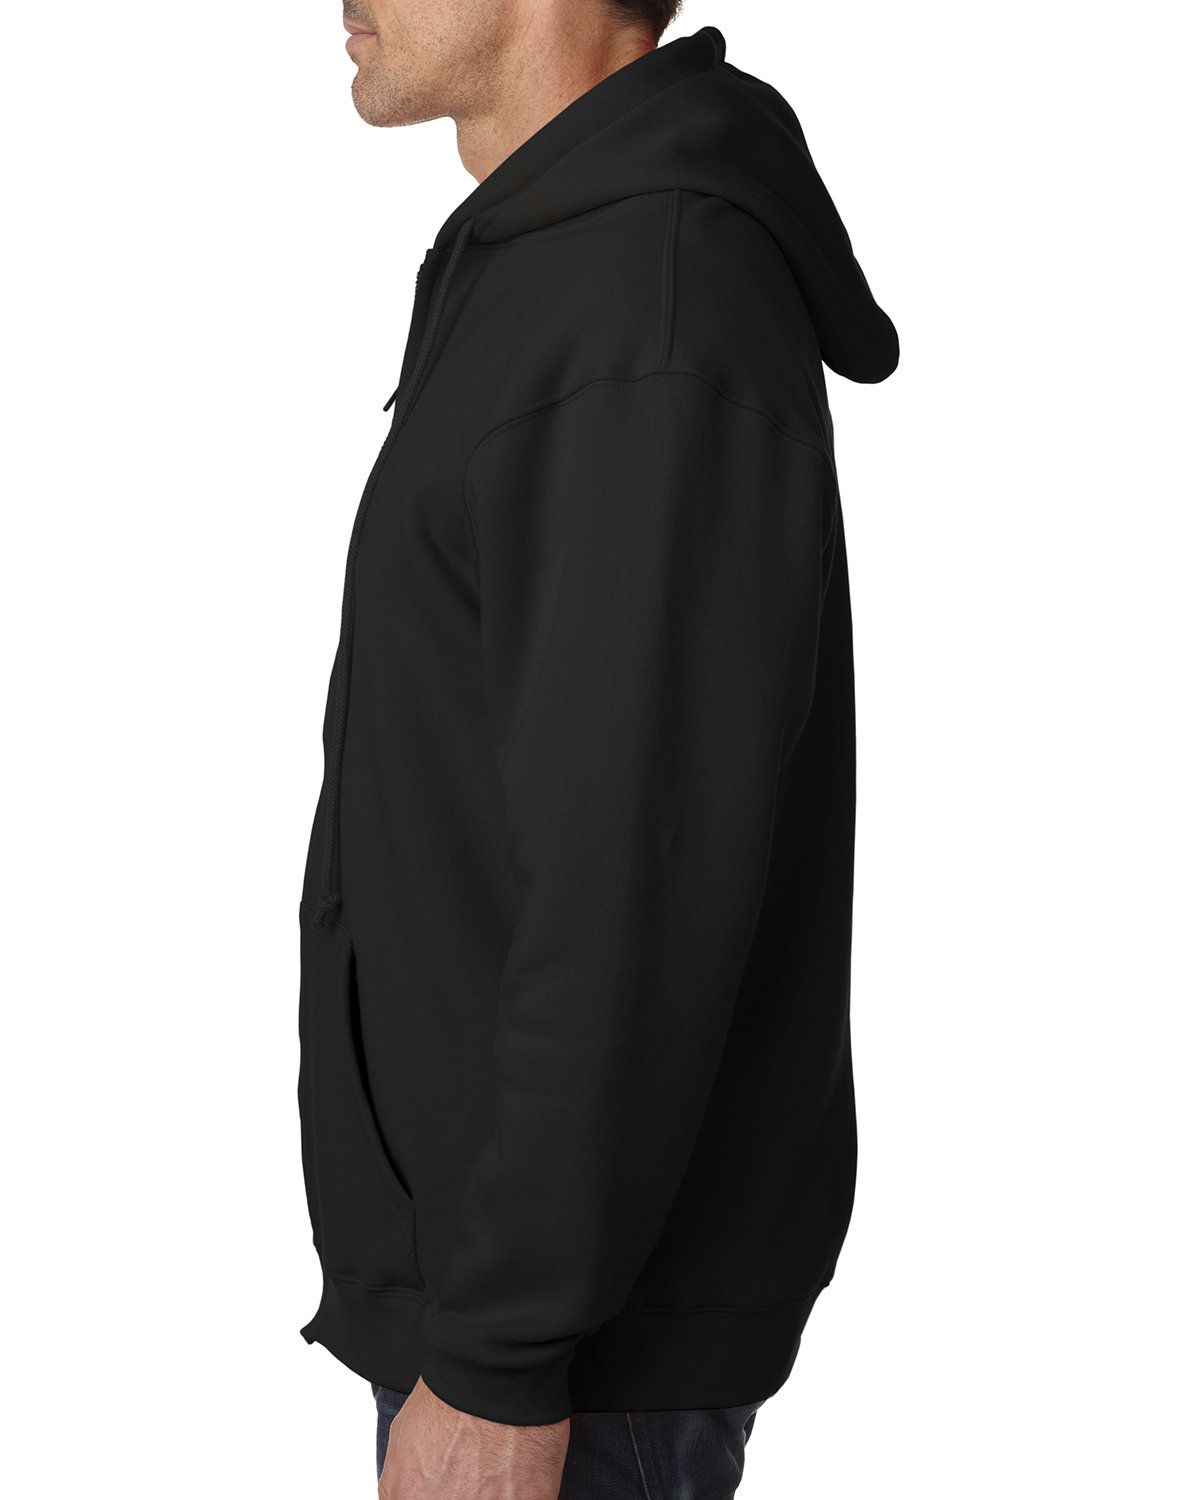 'Bayside BA900 Adult Full-Zip Hooded Sweatshirt'